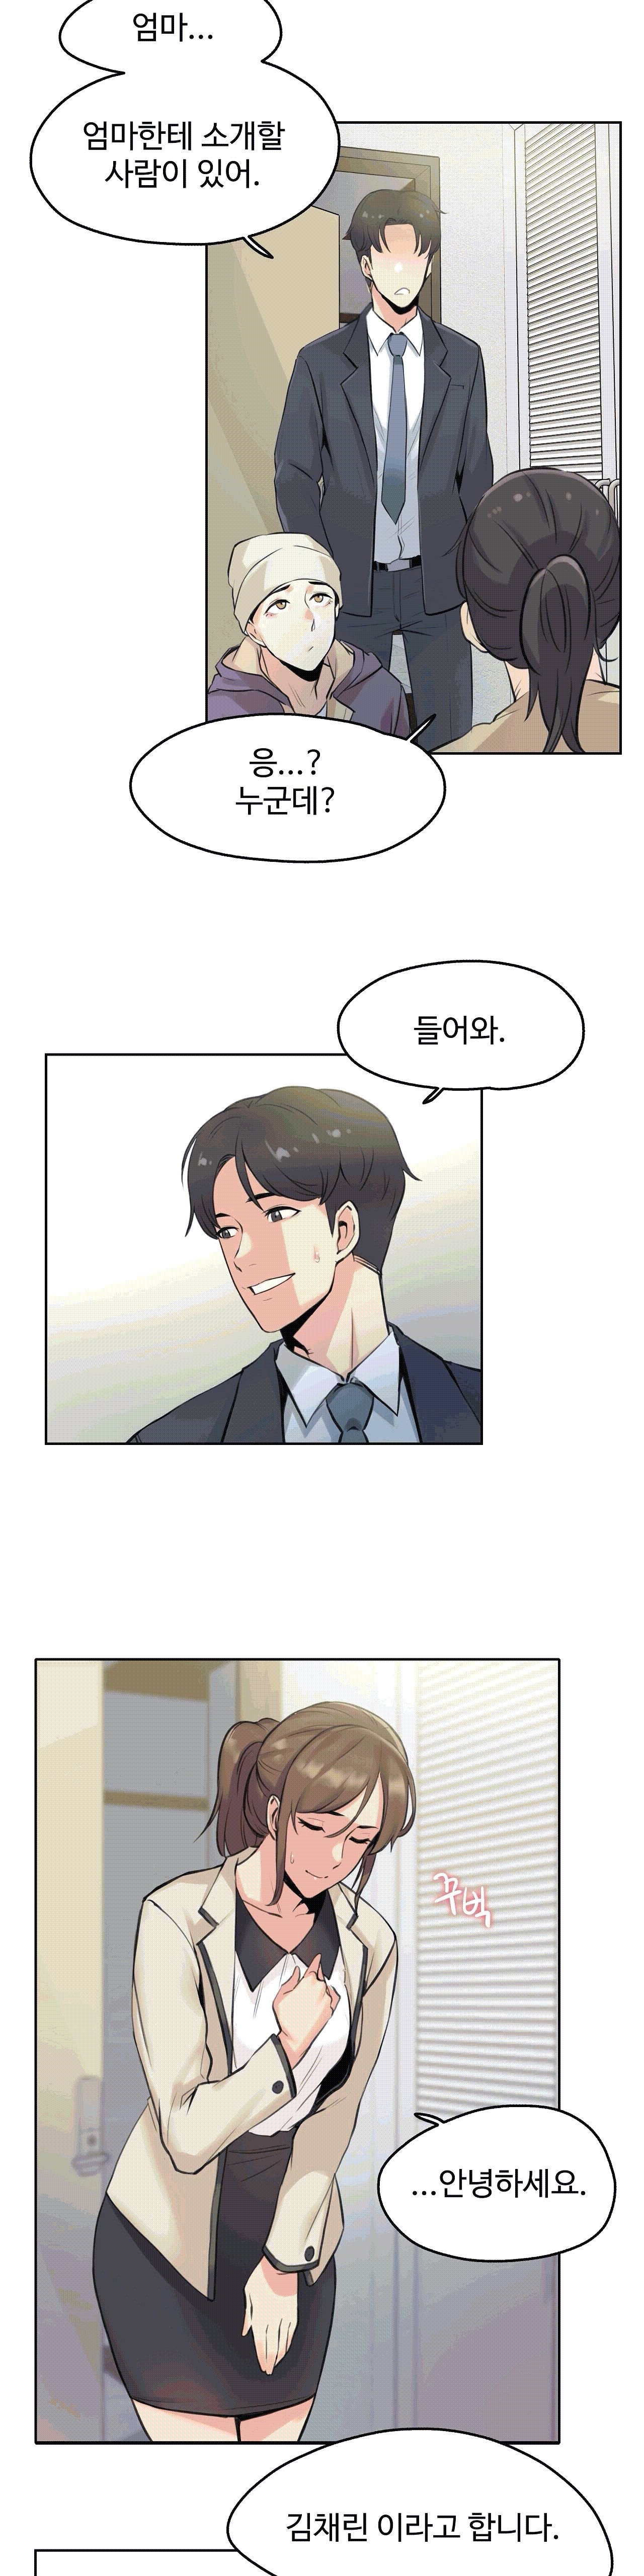 대리 부 | Surrogate Father 6 [Korean] Manhwa 21